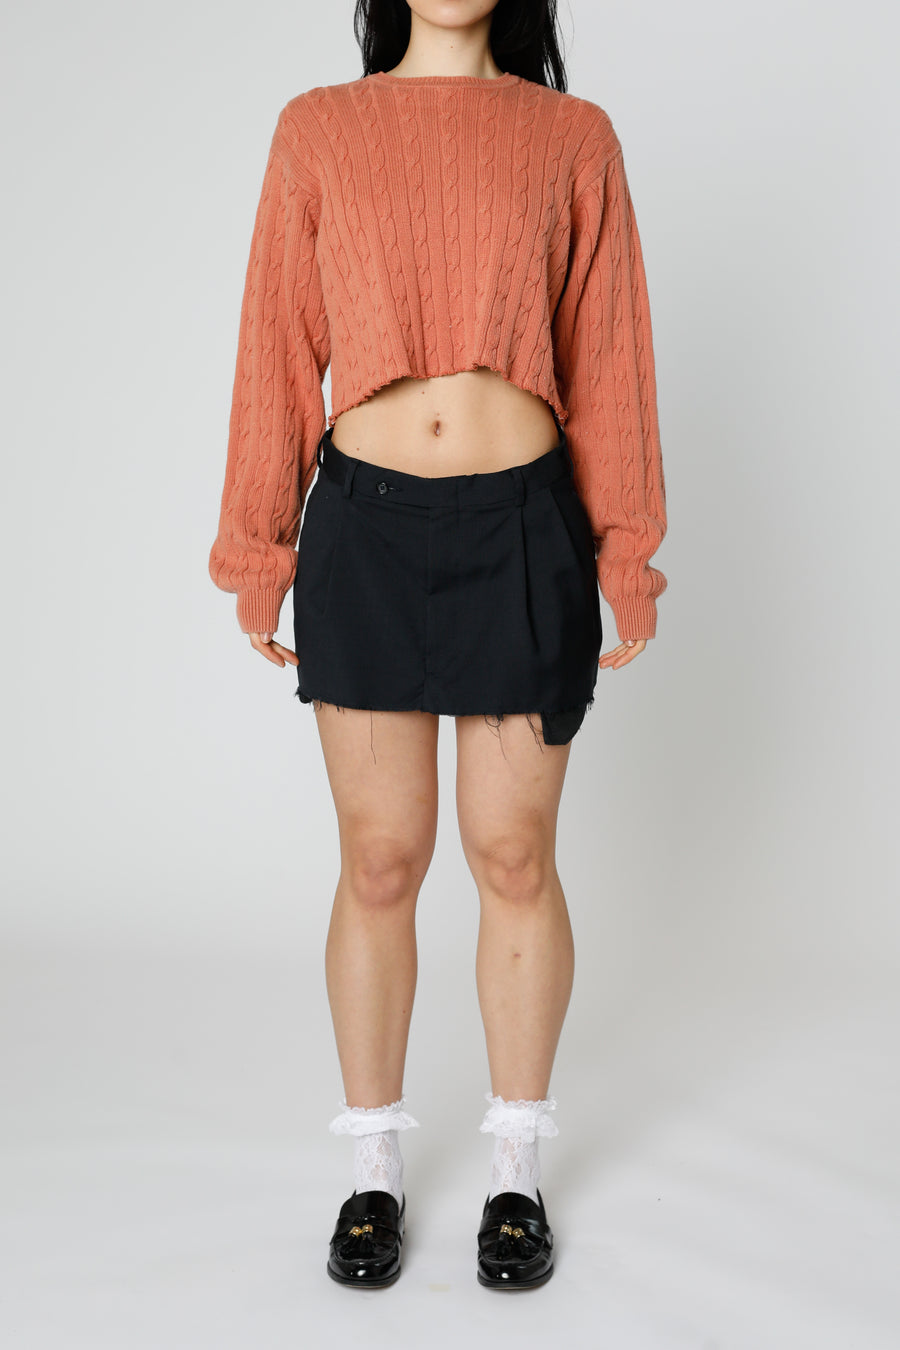 Rework Trouser Skirt - S